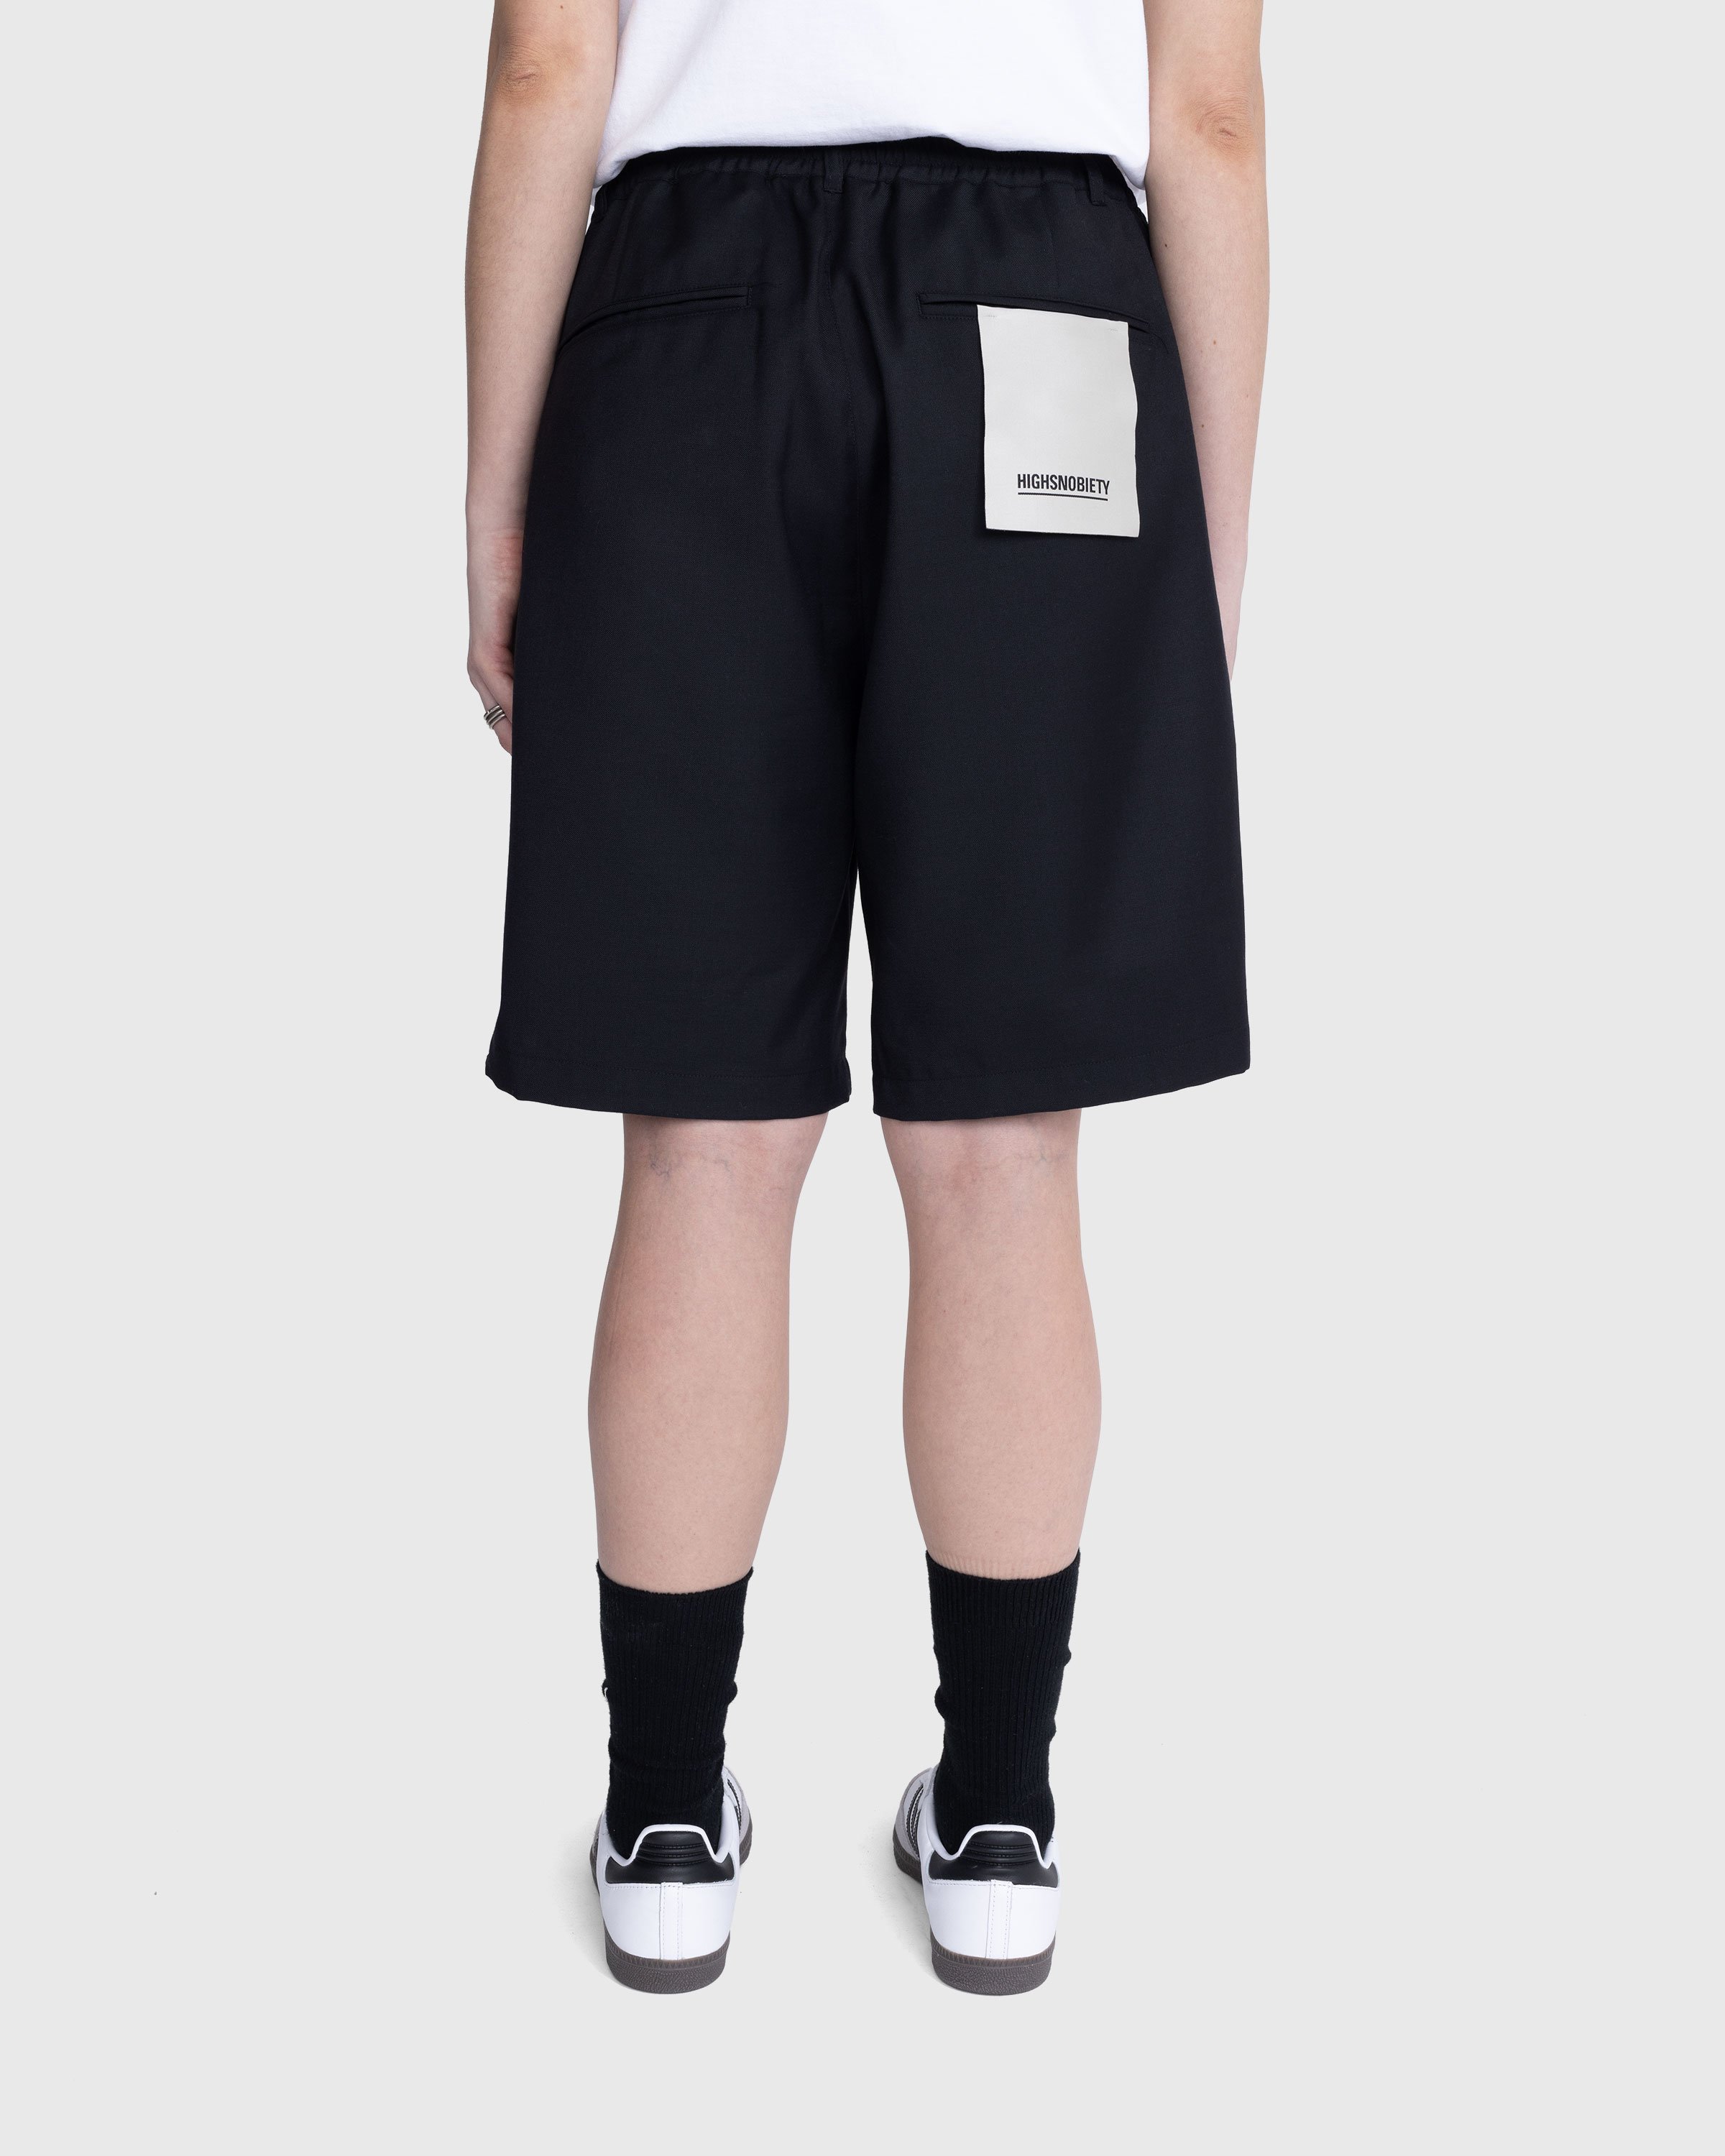 Highsnobiety - Tropical Wool Elastic Shorts Black - Clothing - Black - Image 8